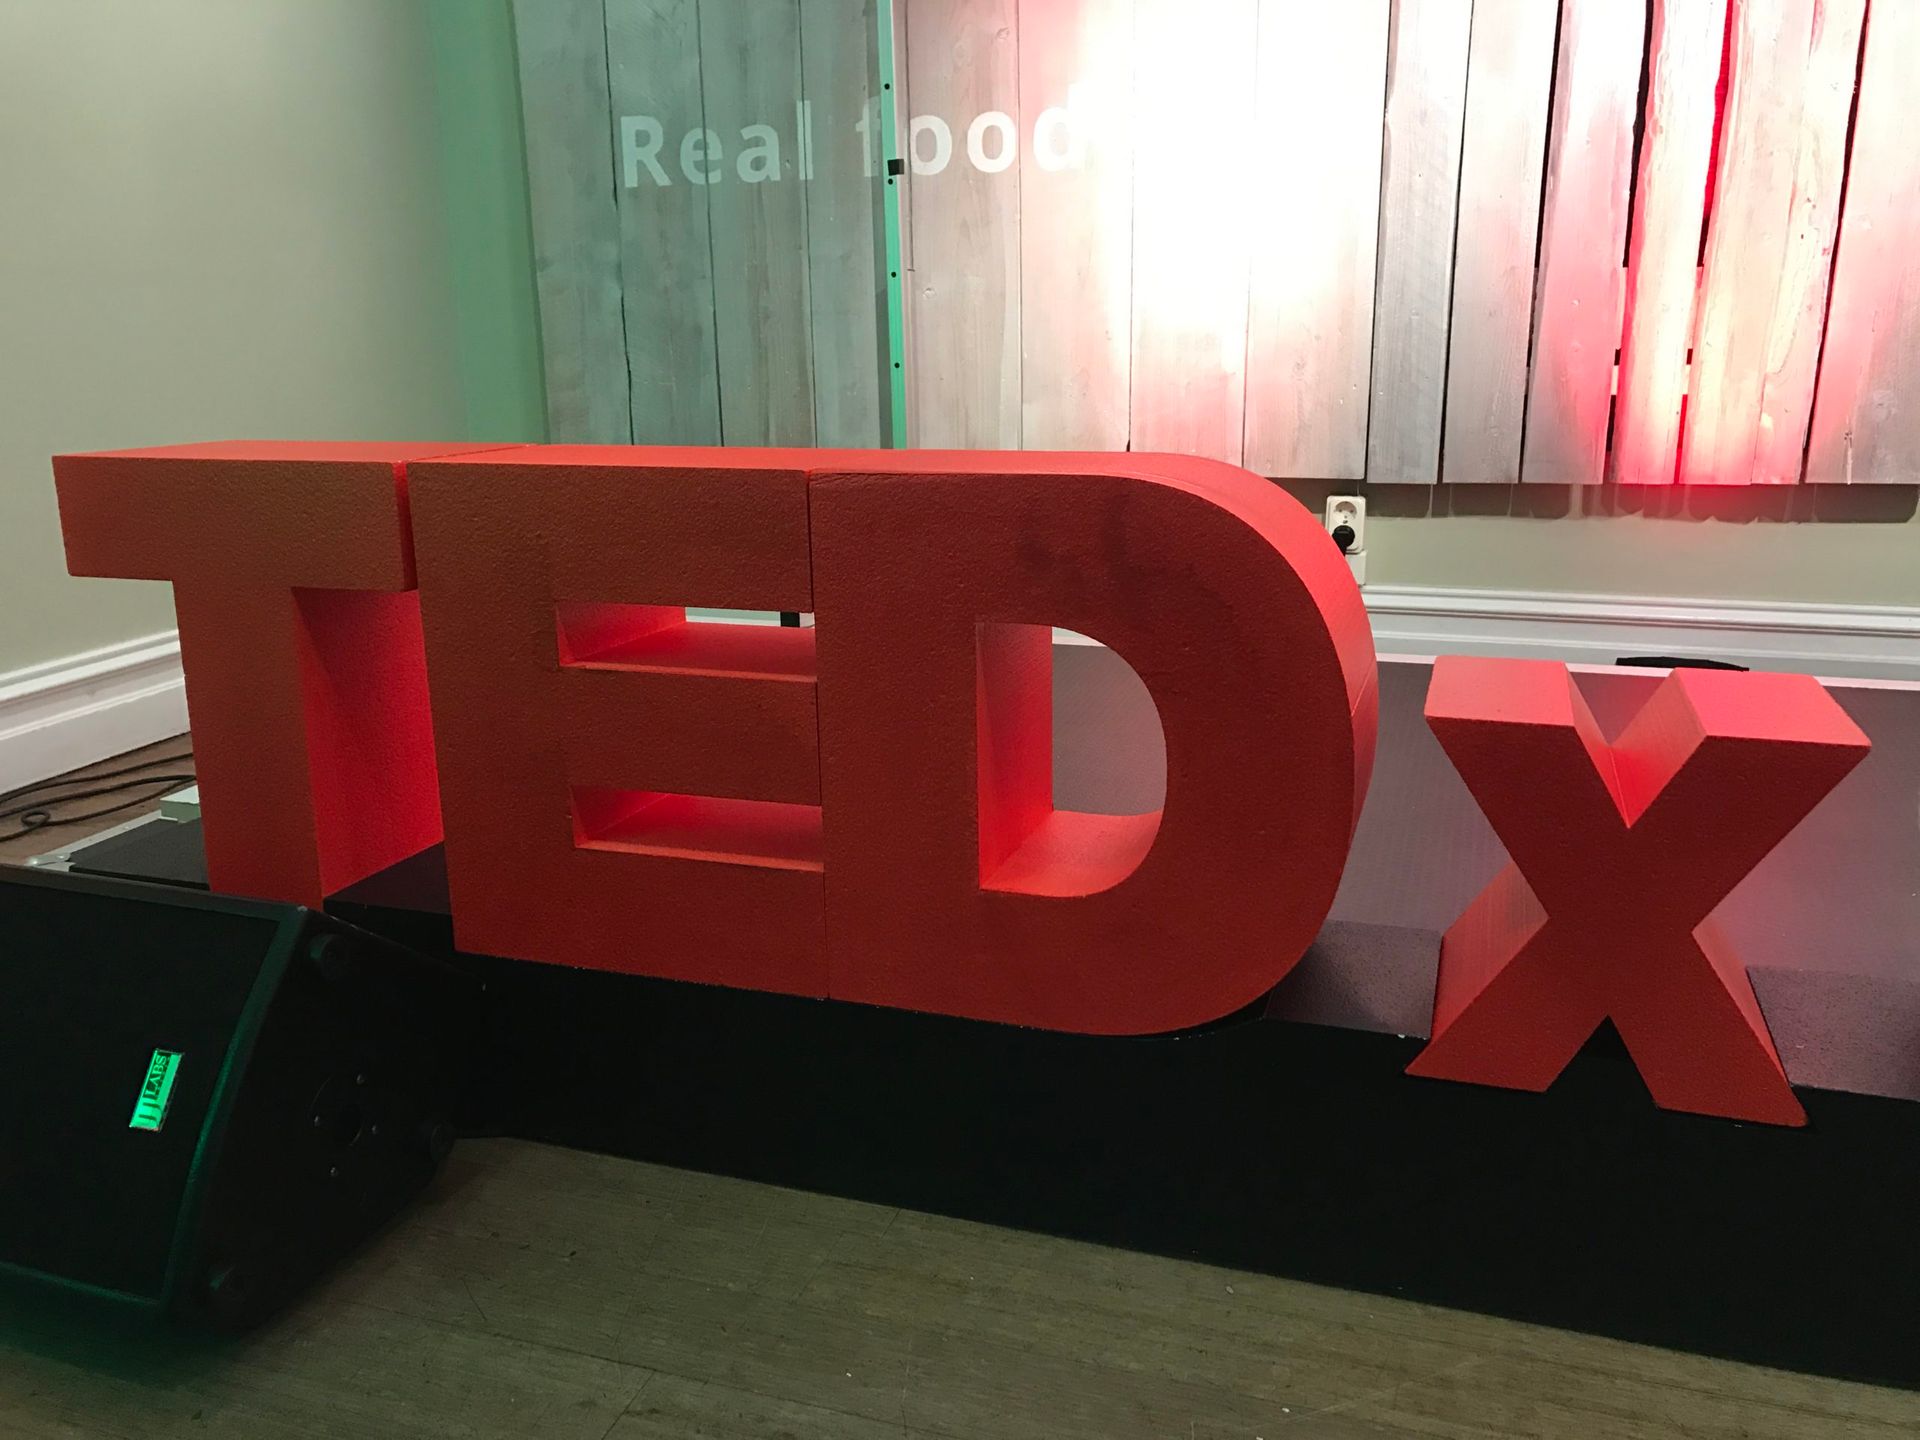 TEDX Gotebörg Salon: Availability vs. Sustainability